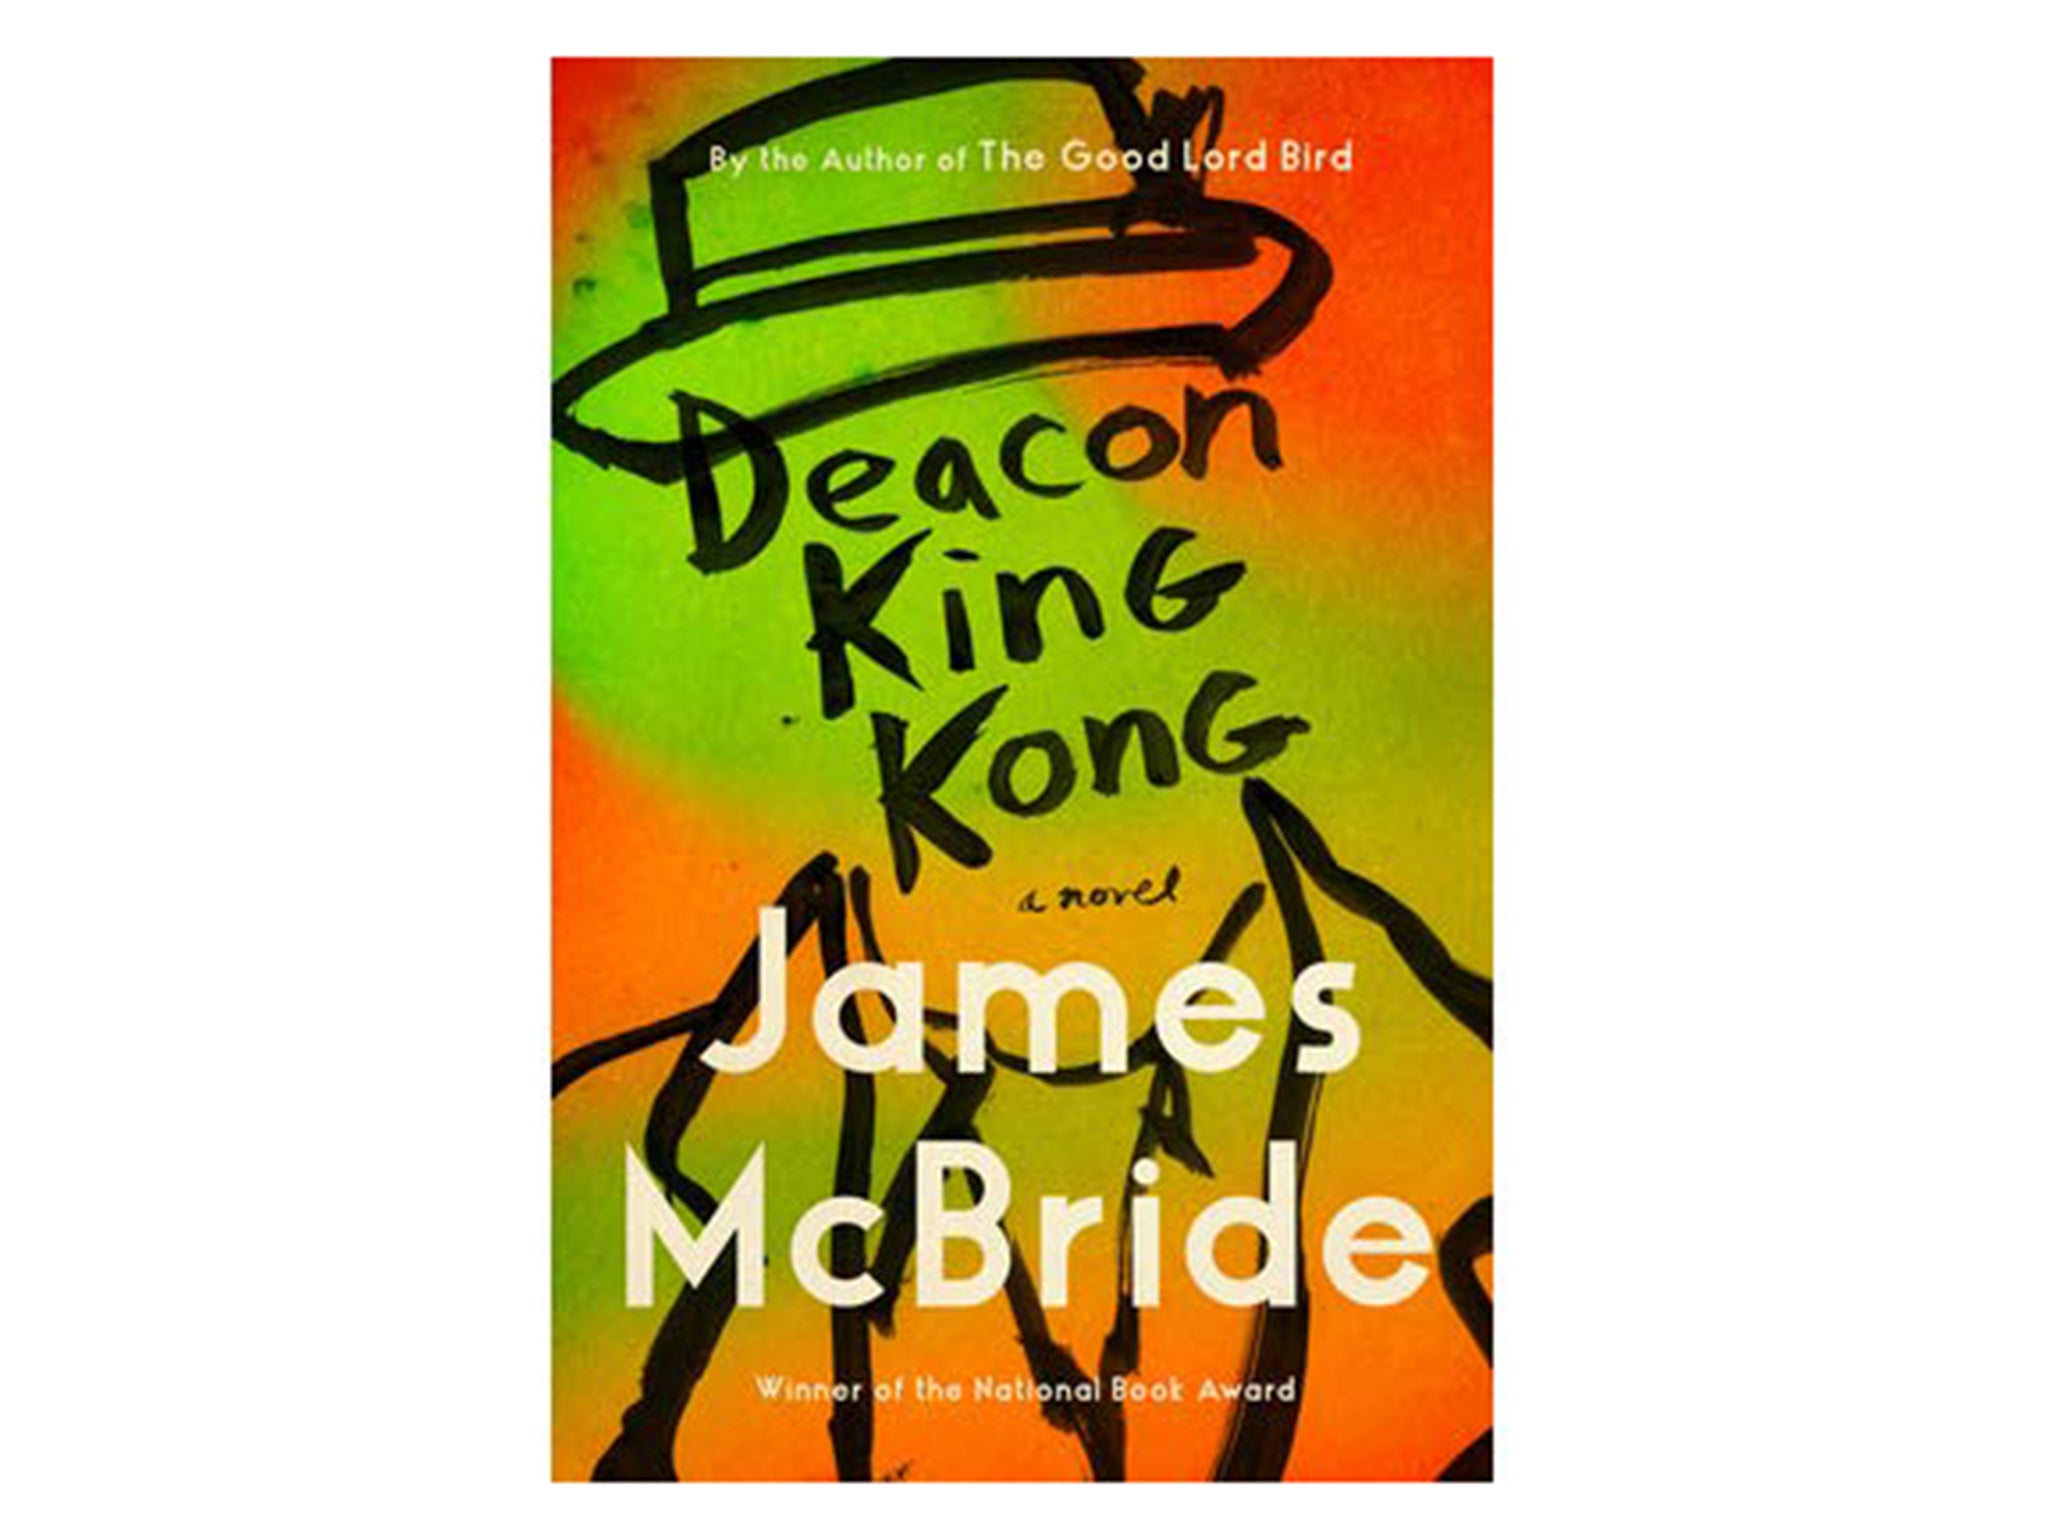 deacon-king-kong-james-mcbride-indybest.jpg